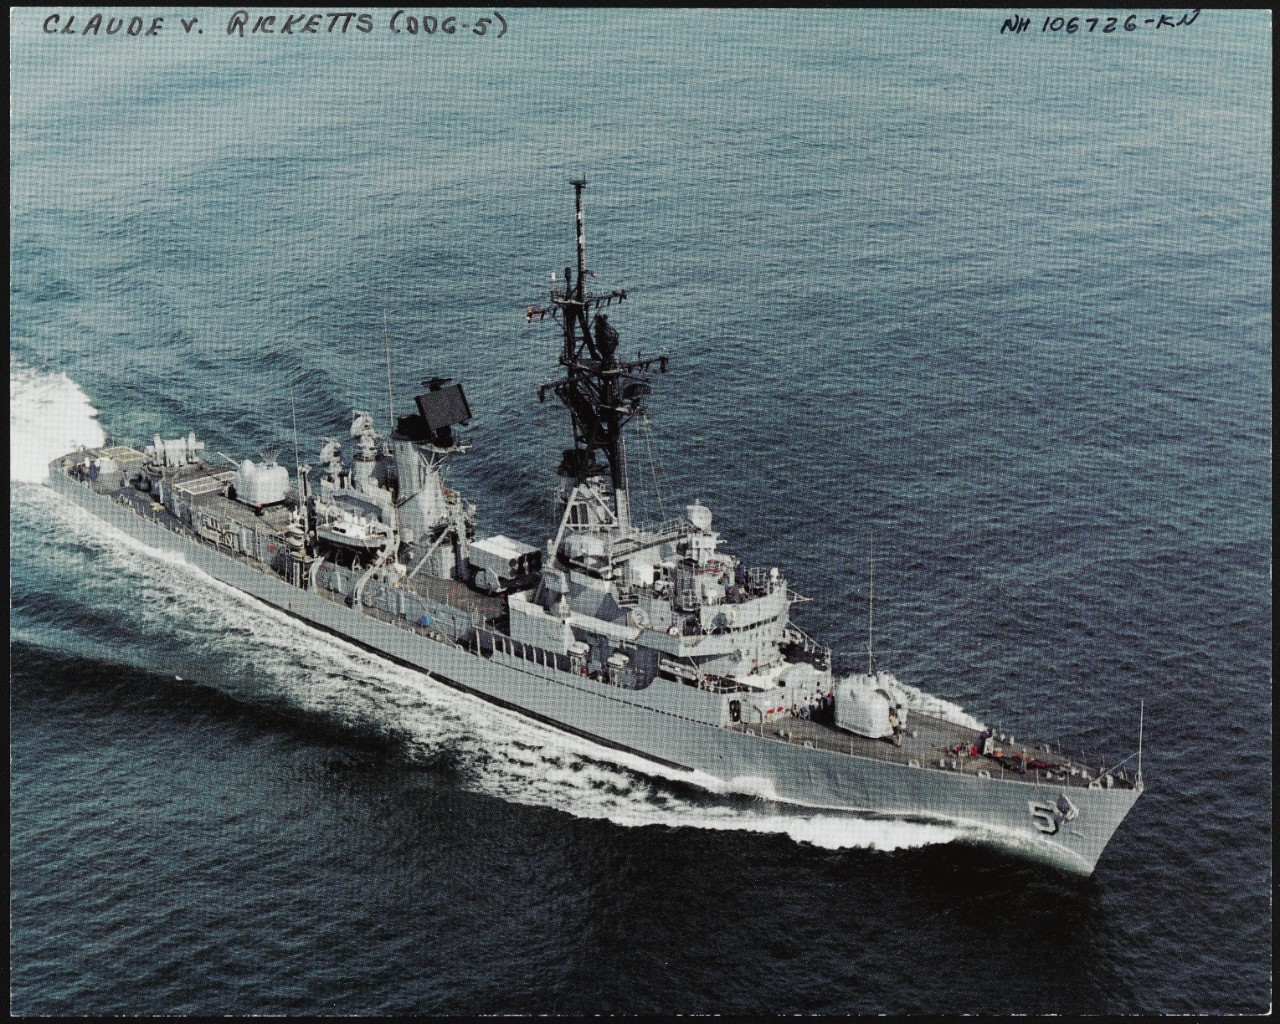 Photo # NH 106726-KN USS Claude V. Ricketts